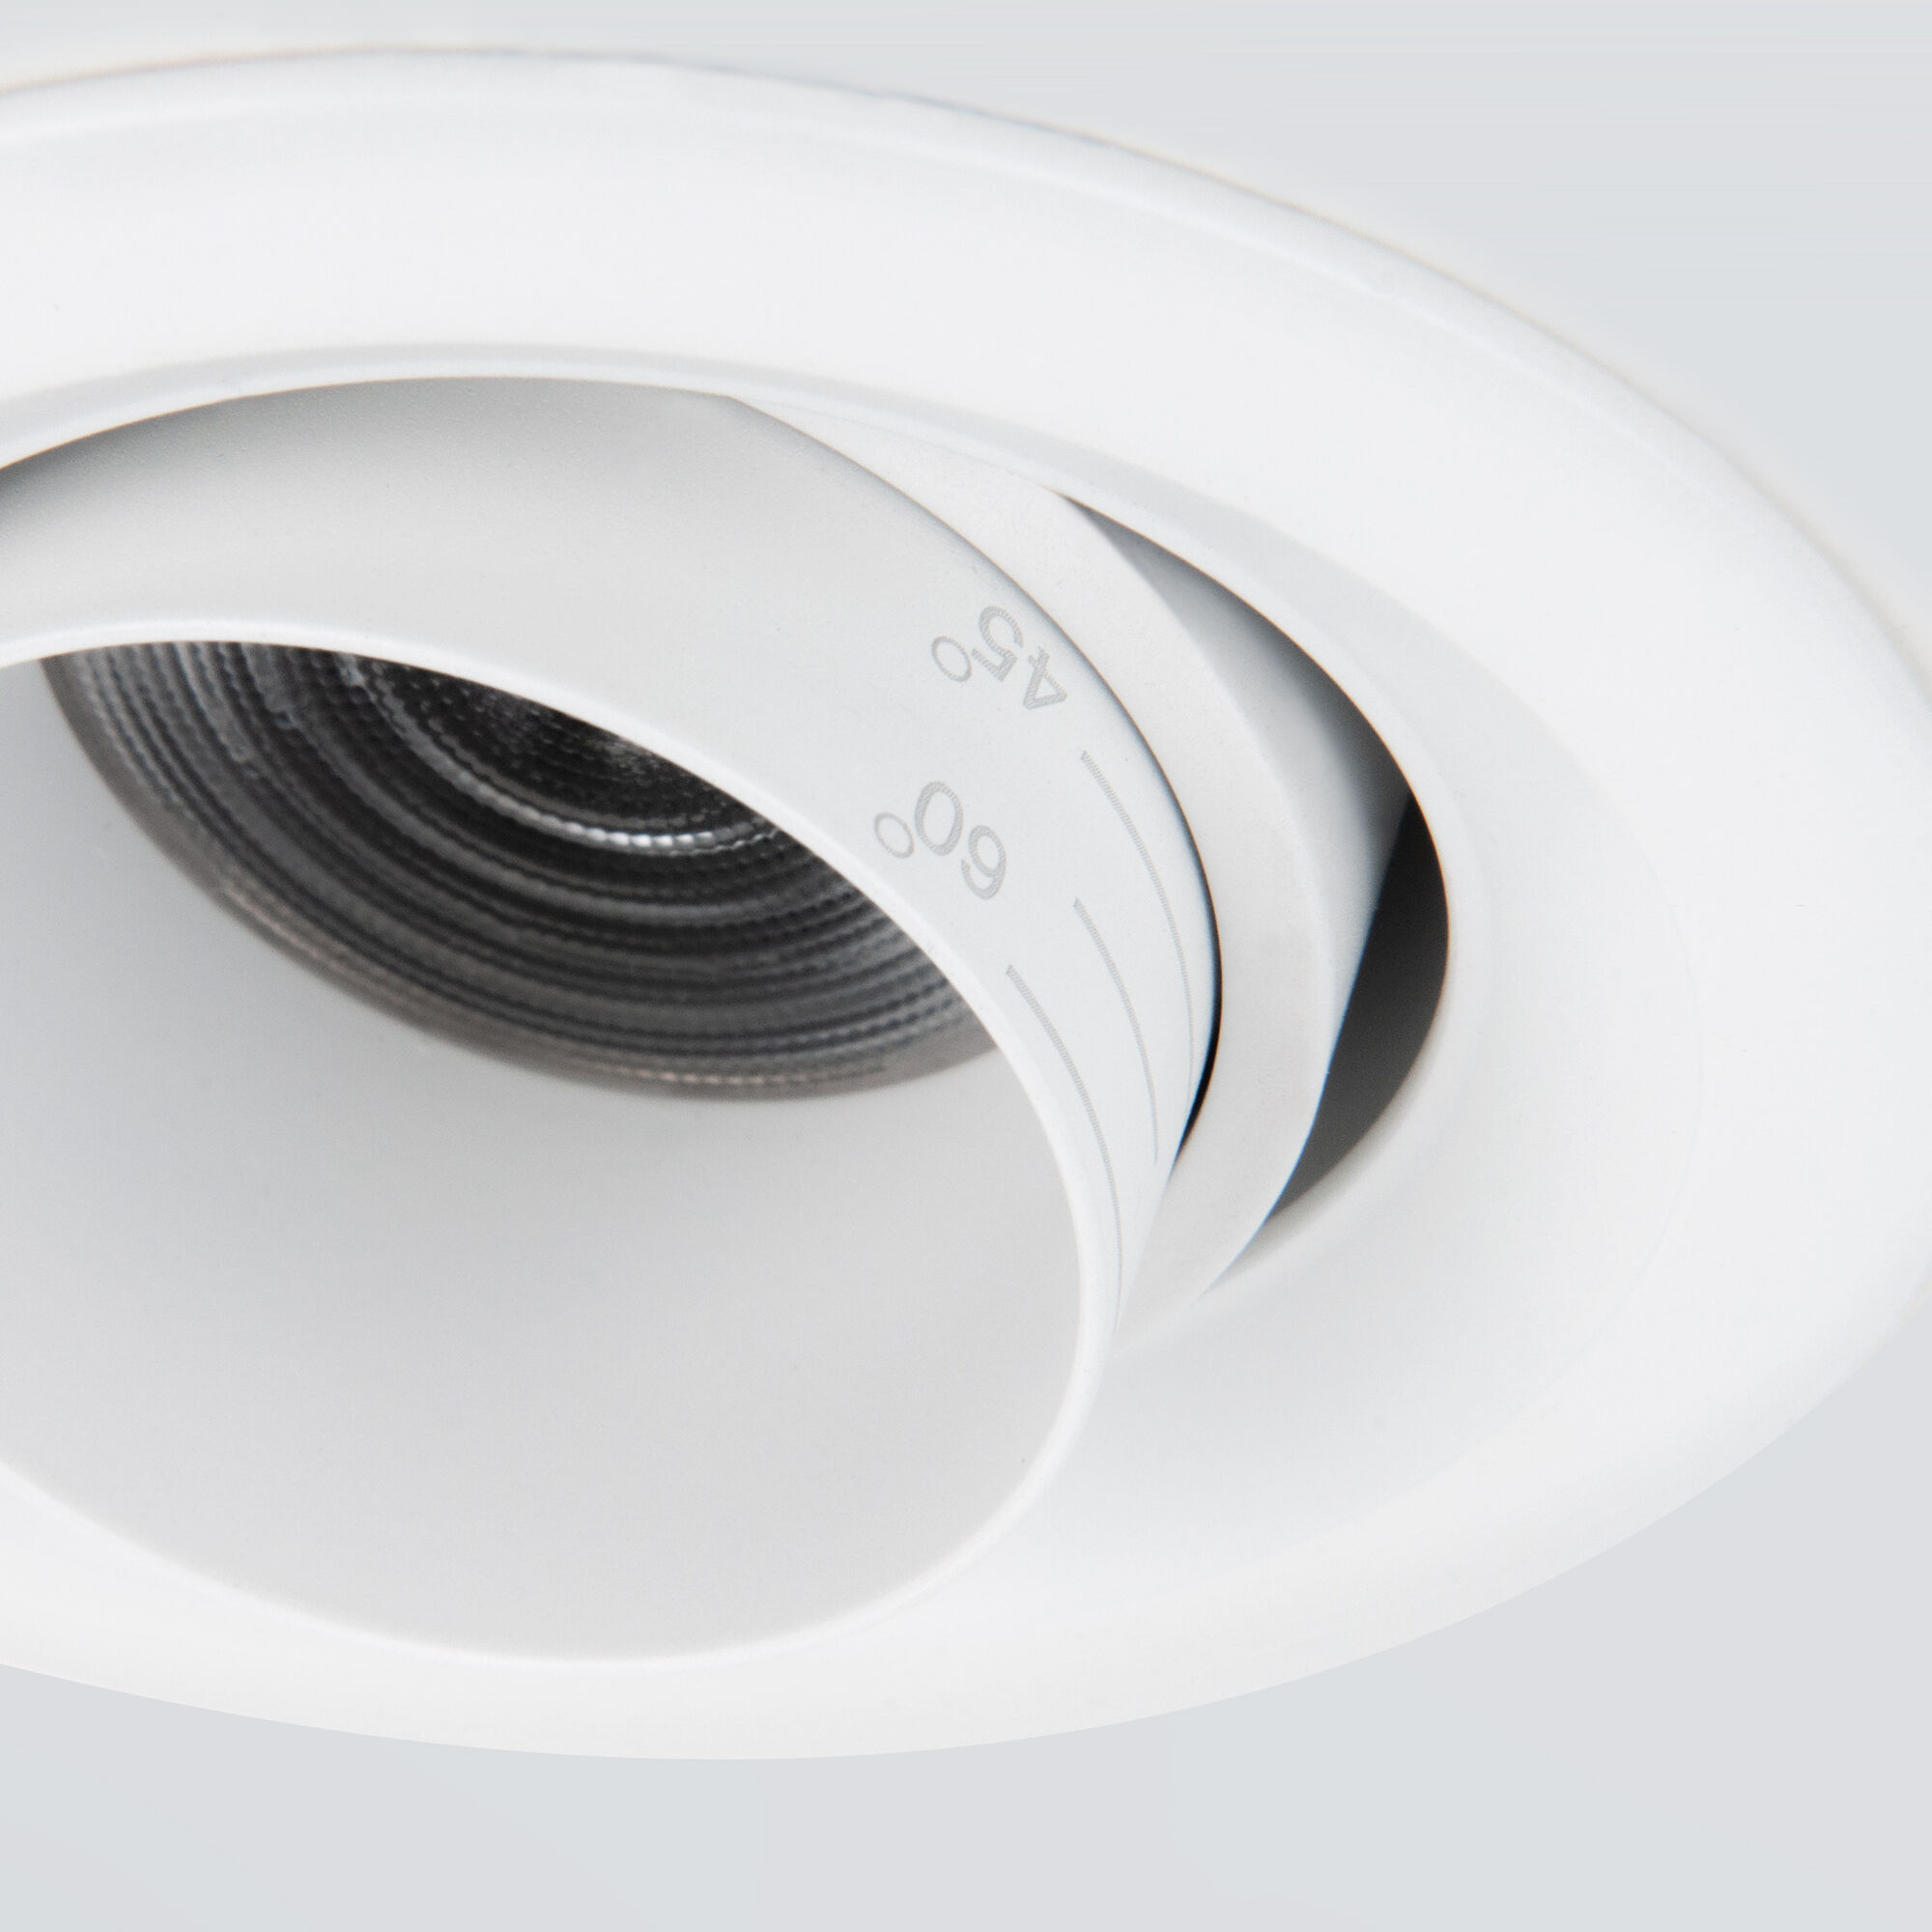 Встраиваемый светодиодный светильник с регулировкой угла освещения Zoom 10W 4200K белый 9919 LED